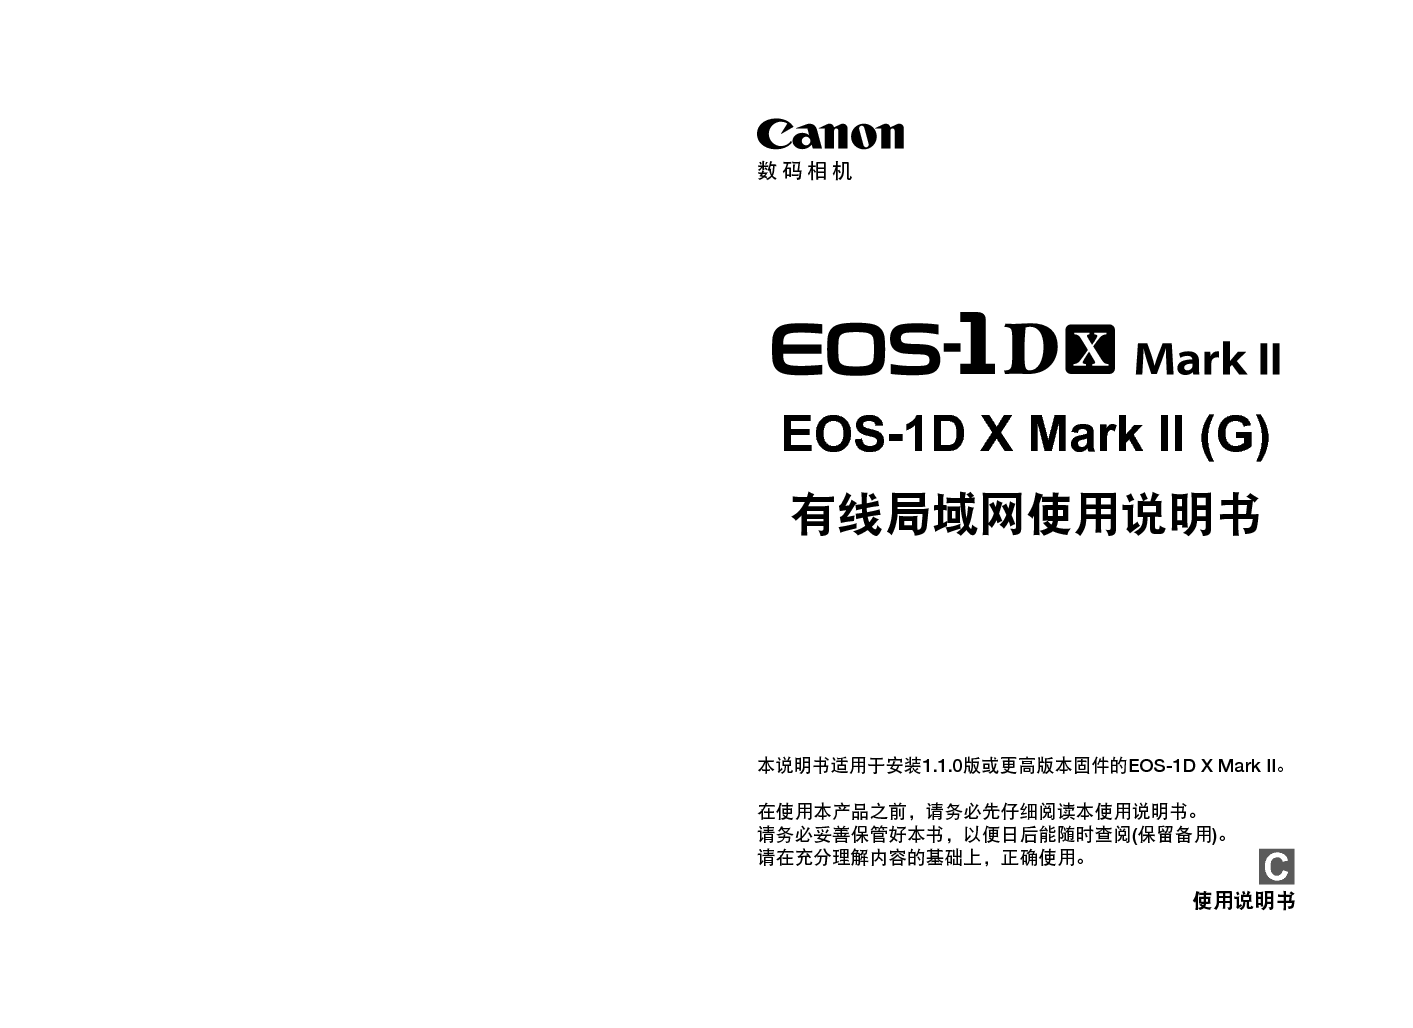 佳能 Canon EOS-1D X Mark II 使用说明书 封面